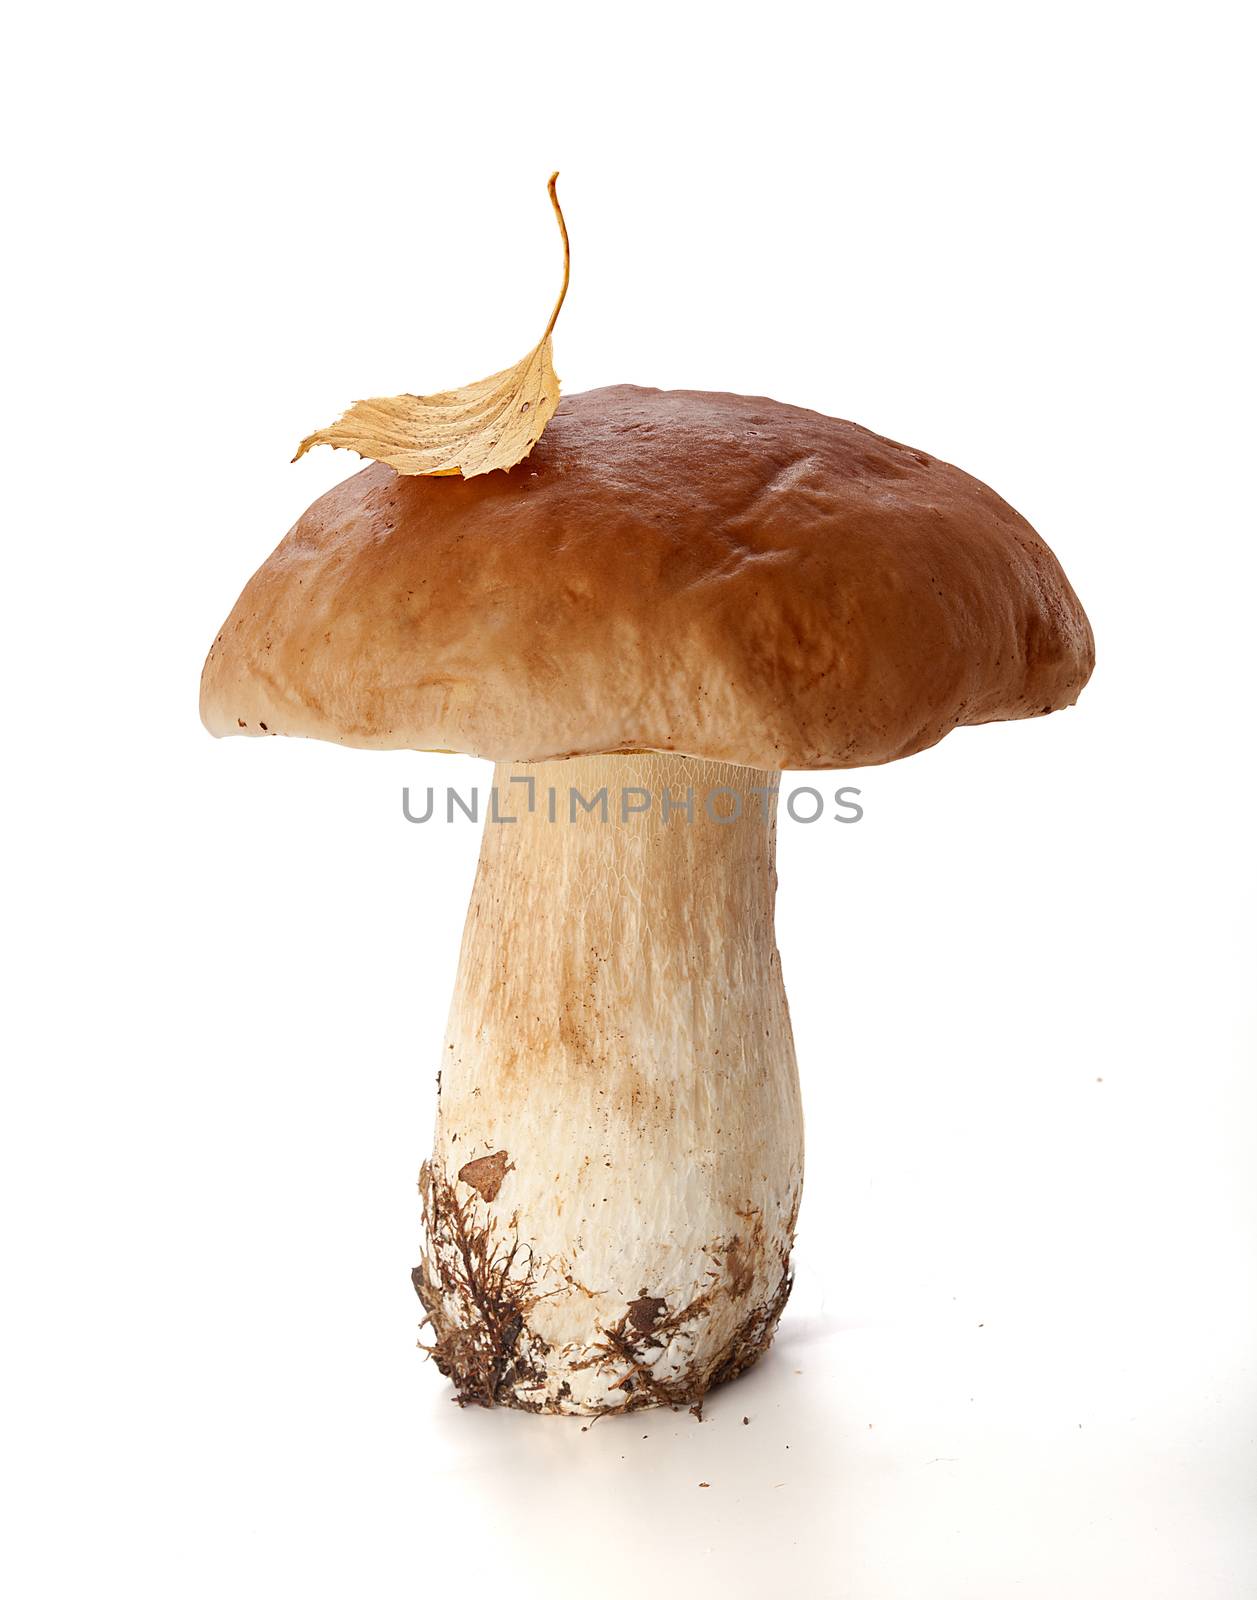 White mushroom by Angorius